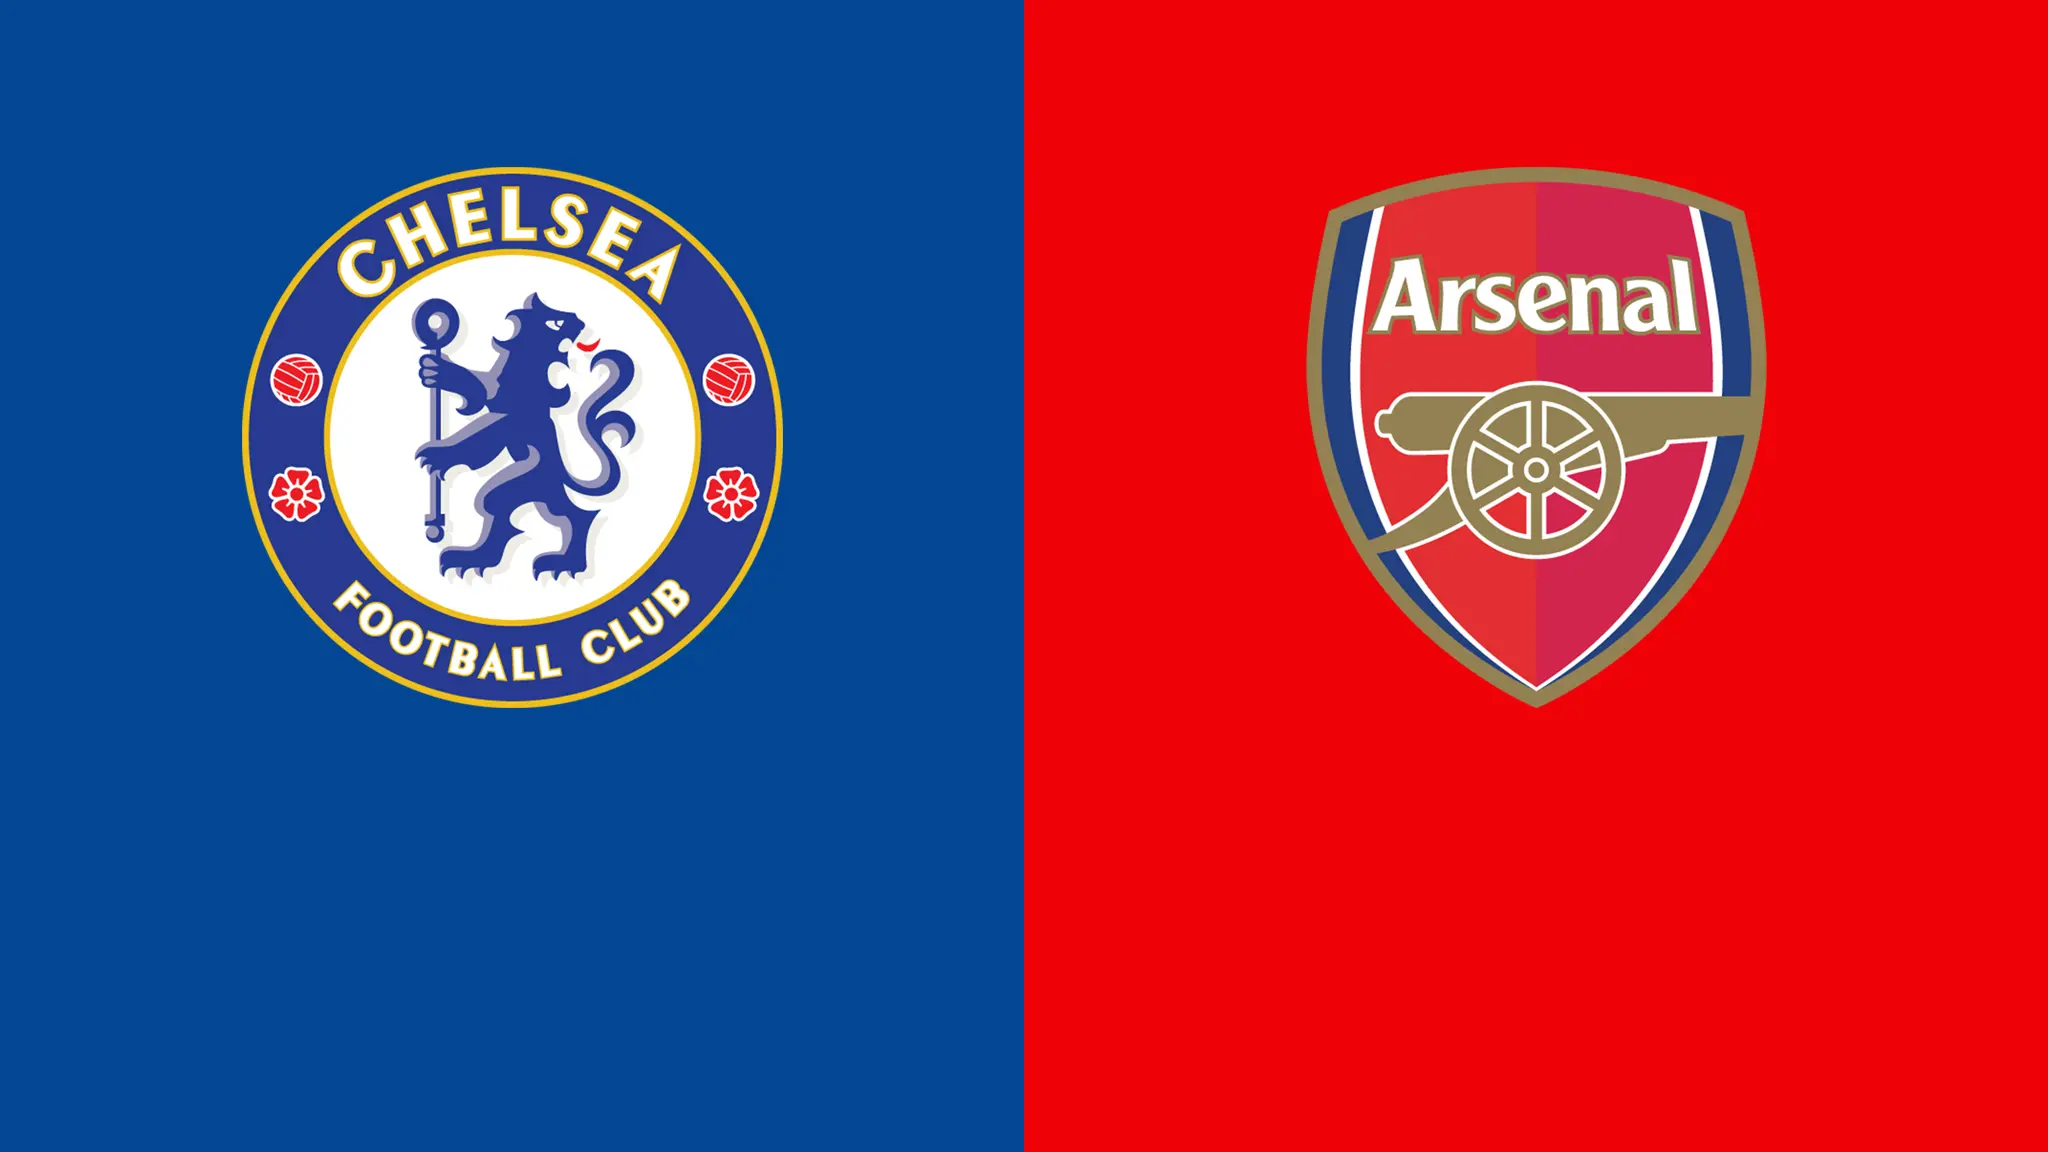 resumen del partido chelsea vs arsenal hoy - Dónde ver el Arsenal Chelsea hoy